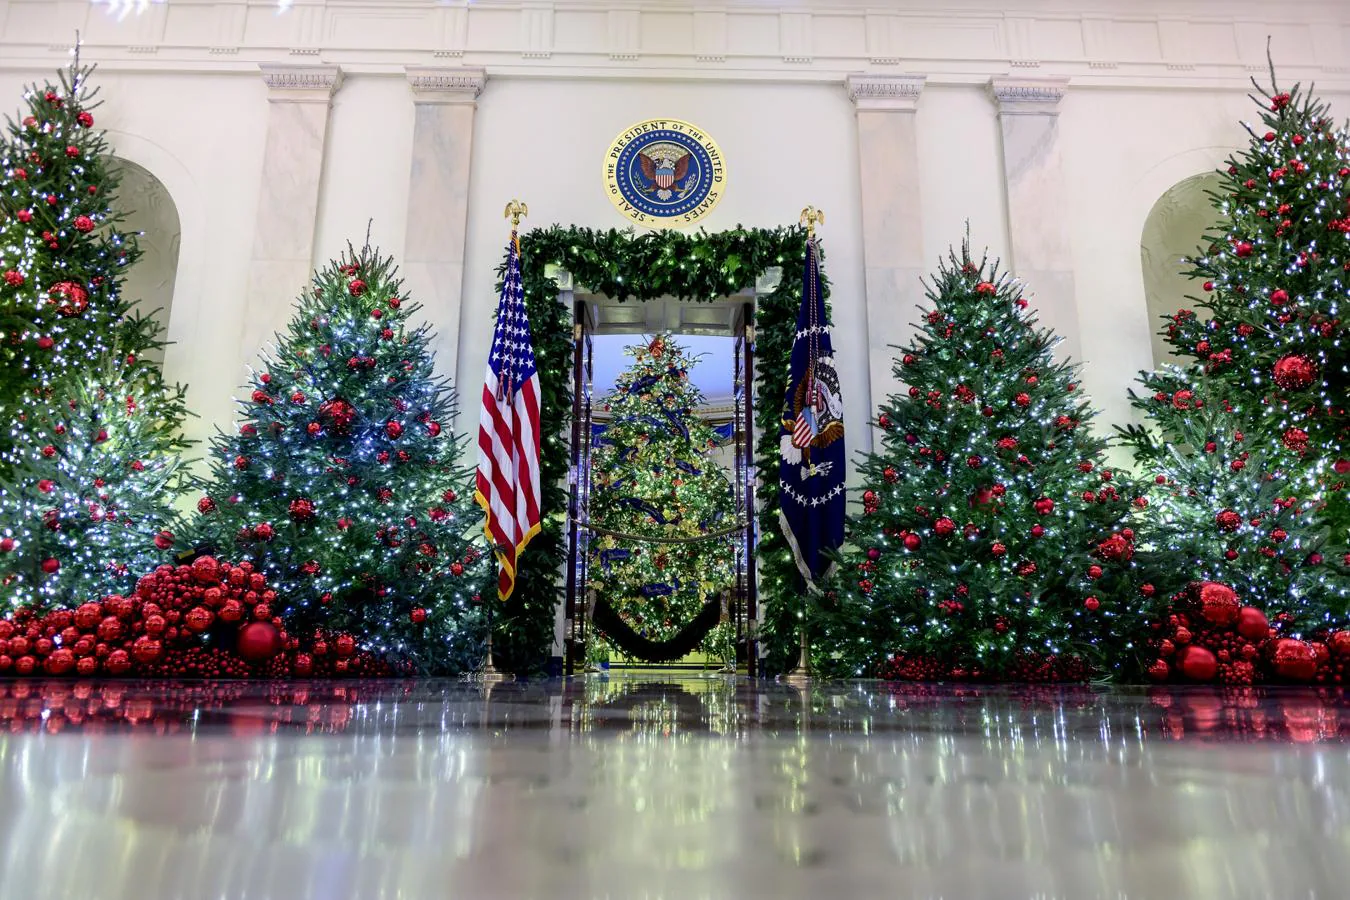 Árbol principal en la Sala Azul. El árbol de Navidad de la Casa Blanca, que sirve como pieza central para las decoraciones navideñas, debe medir unos tres metros de altura y alcanza el techo de la Sala Azul, uno de los principales salones del hogar de Donald Trump y Melania Trump.